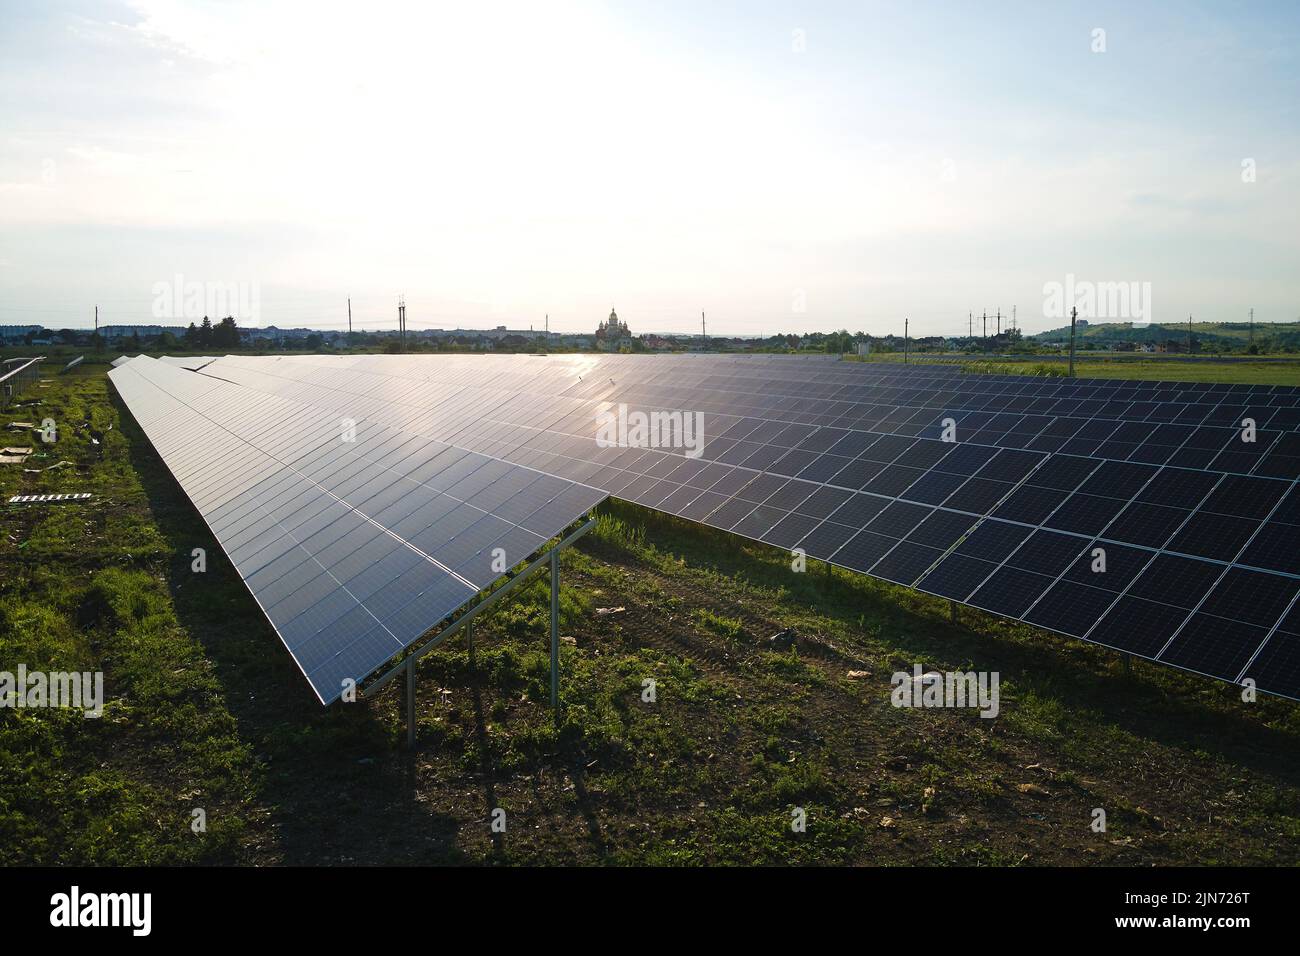 Vue aérienne de la centrale solaire sur un champ vert. Ferme électrique avec des panneaux pour produire de l'énergie écologique propre Banque D'Images